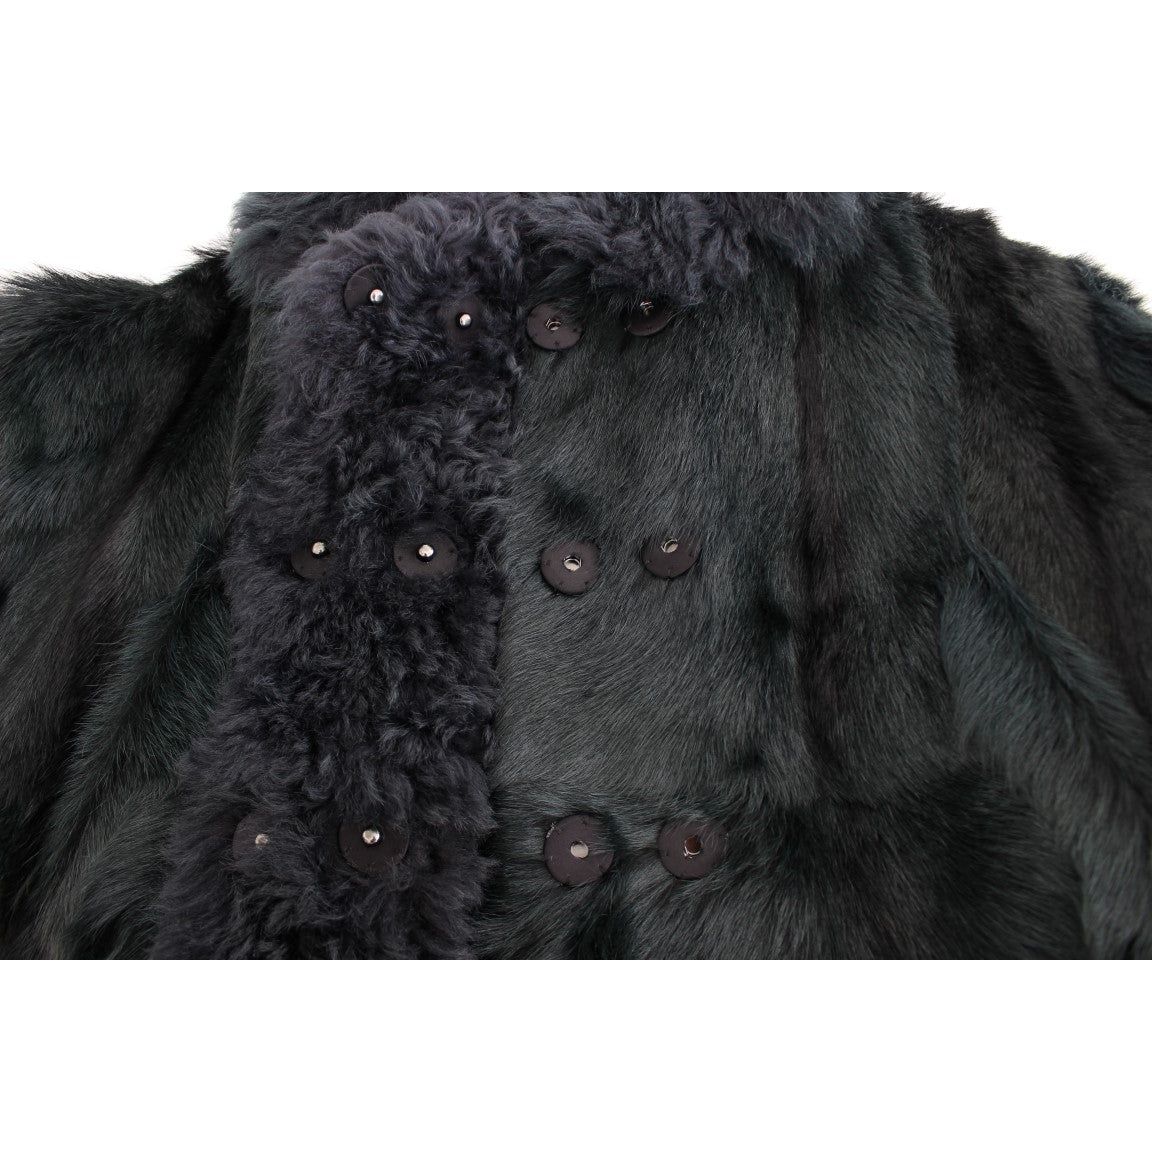 Dolce & Gabbana | Black Goat Fur Shearling Long Jacket Coat | McRichard Designer Brands